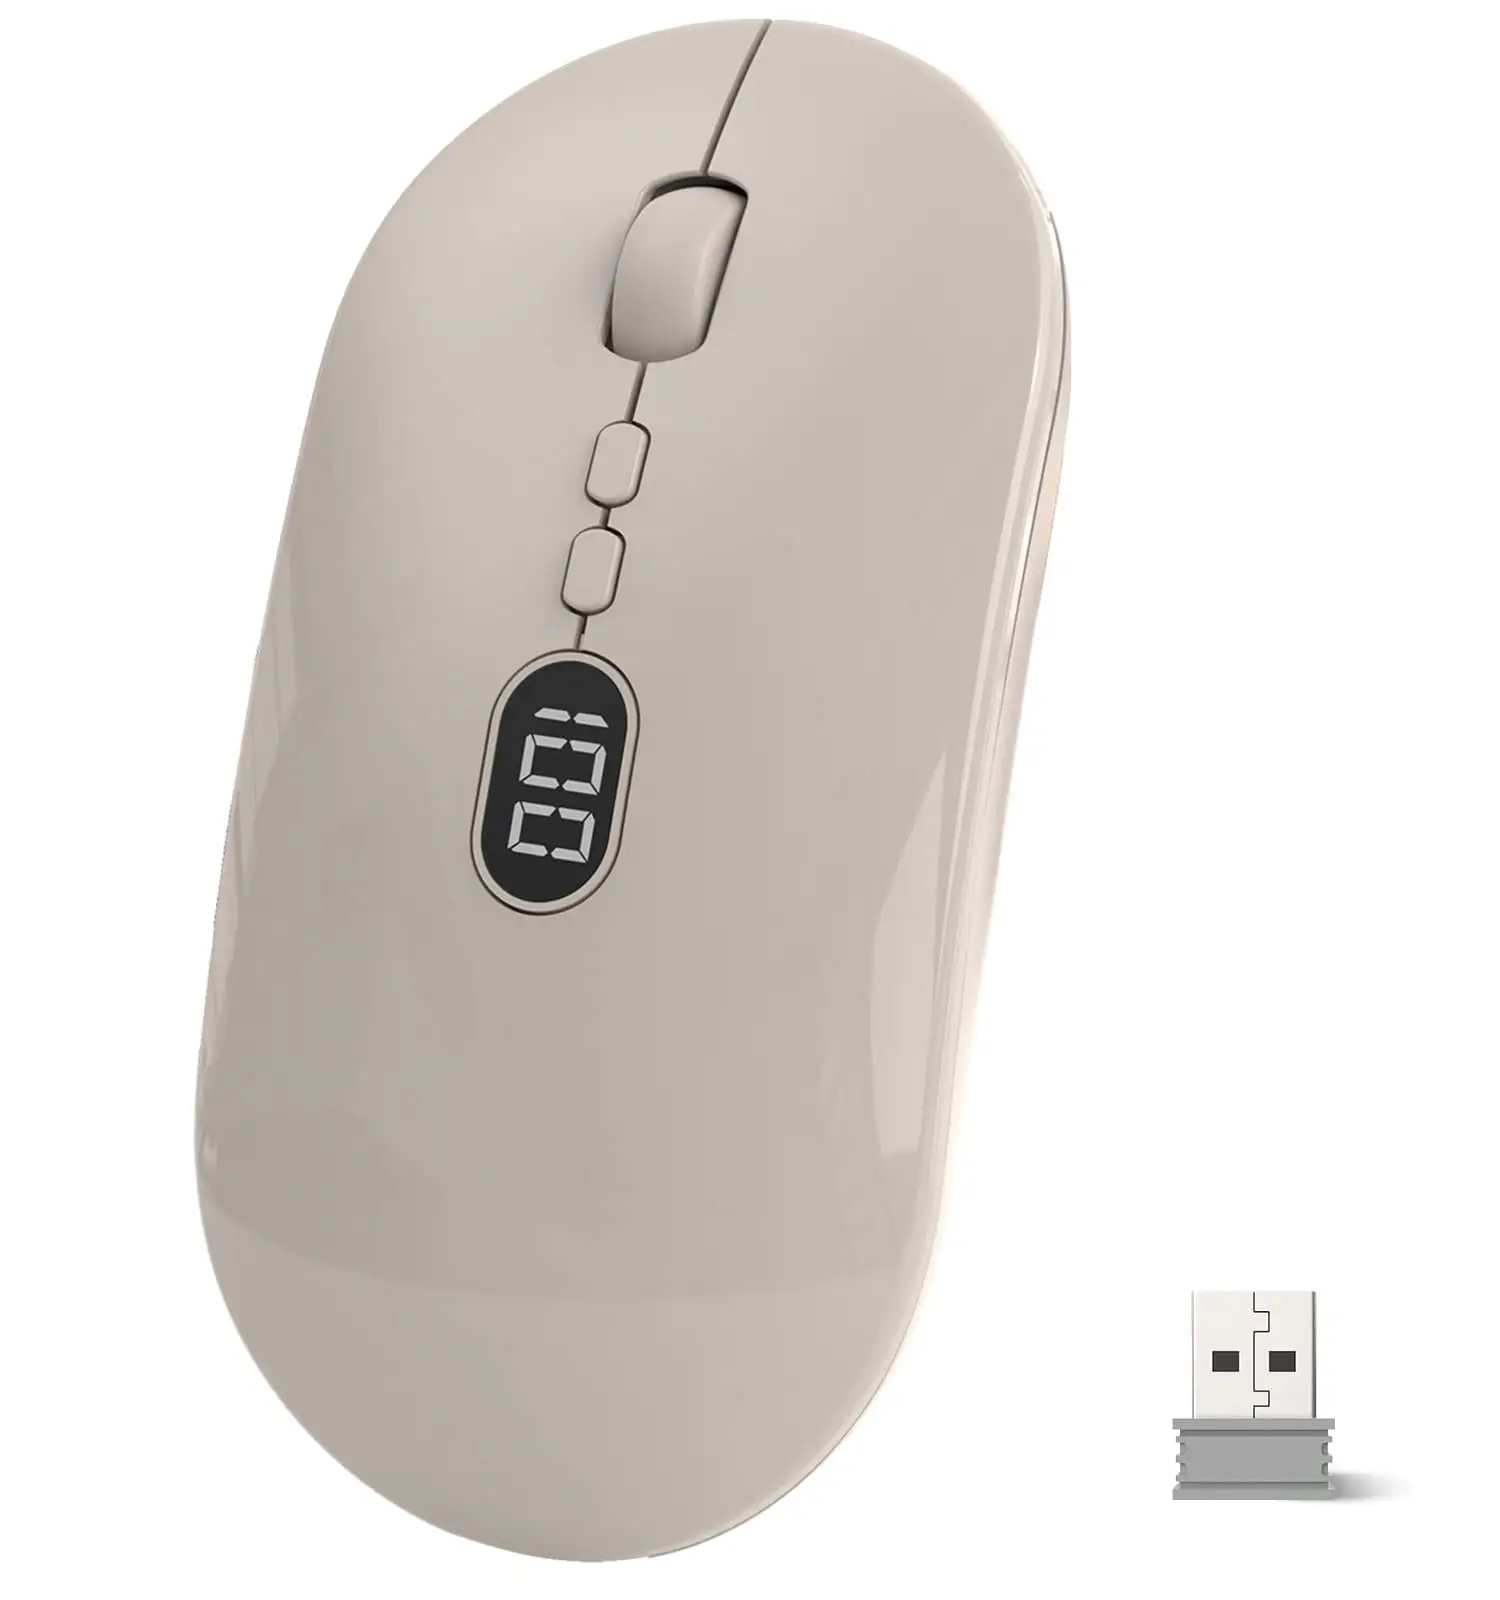 Kozh nuovo mouse wireless ricaricabile senza fili silenzioso Click 2.4 BT dual mode con schermo di visualizzazione della batteria per MAC/WIN